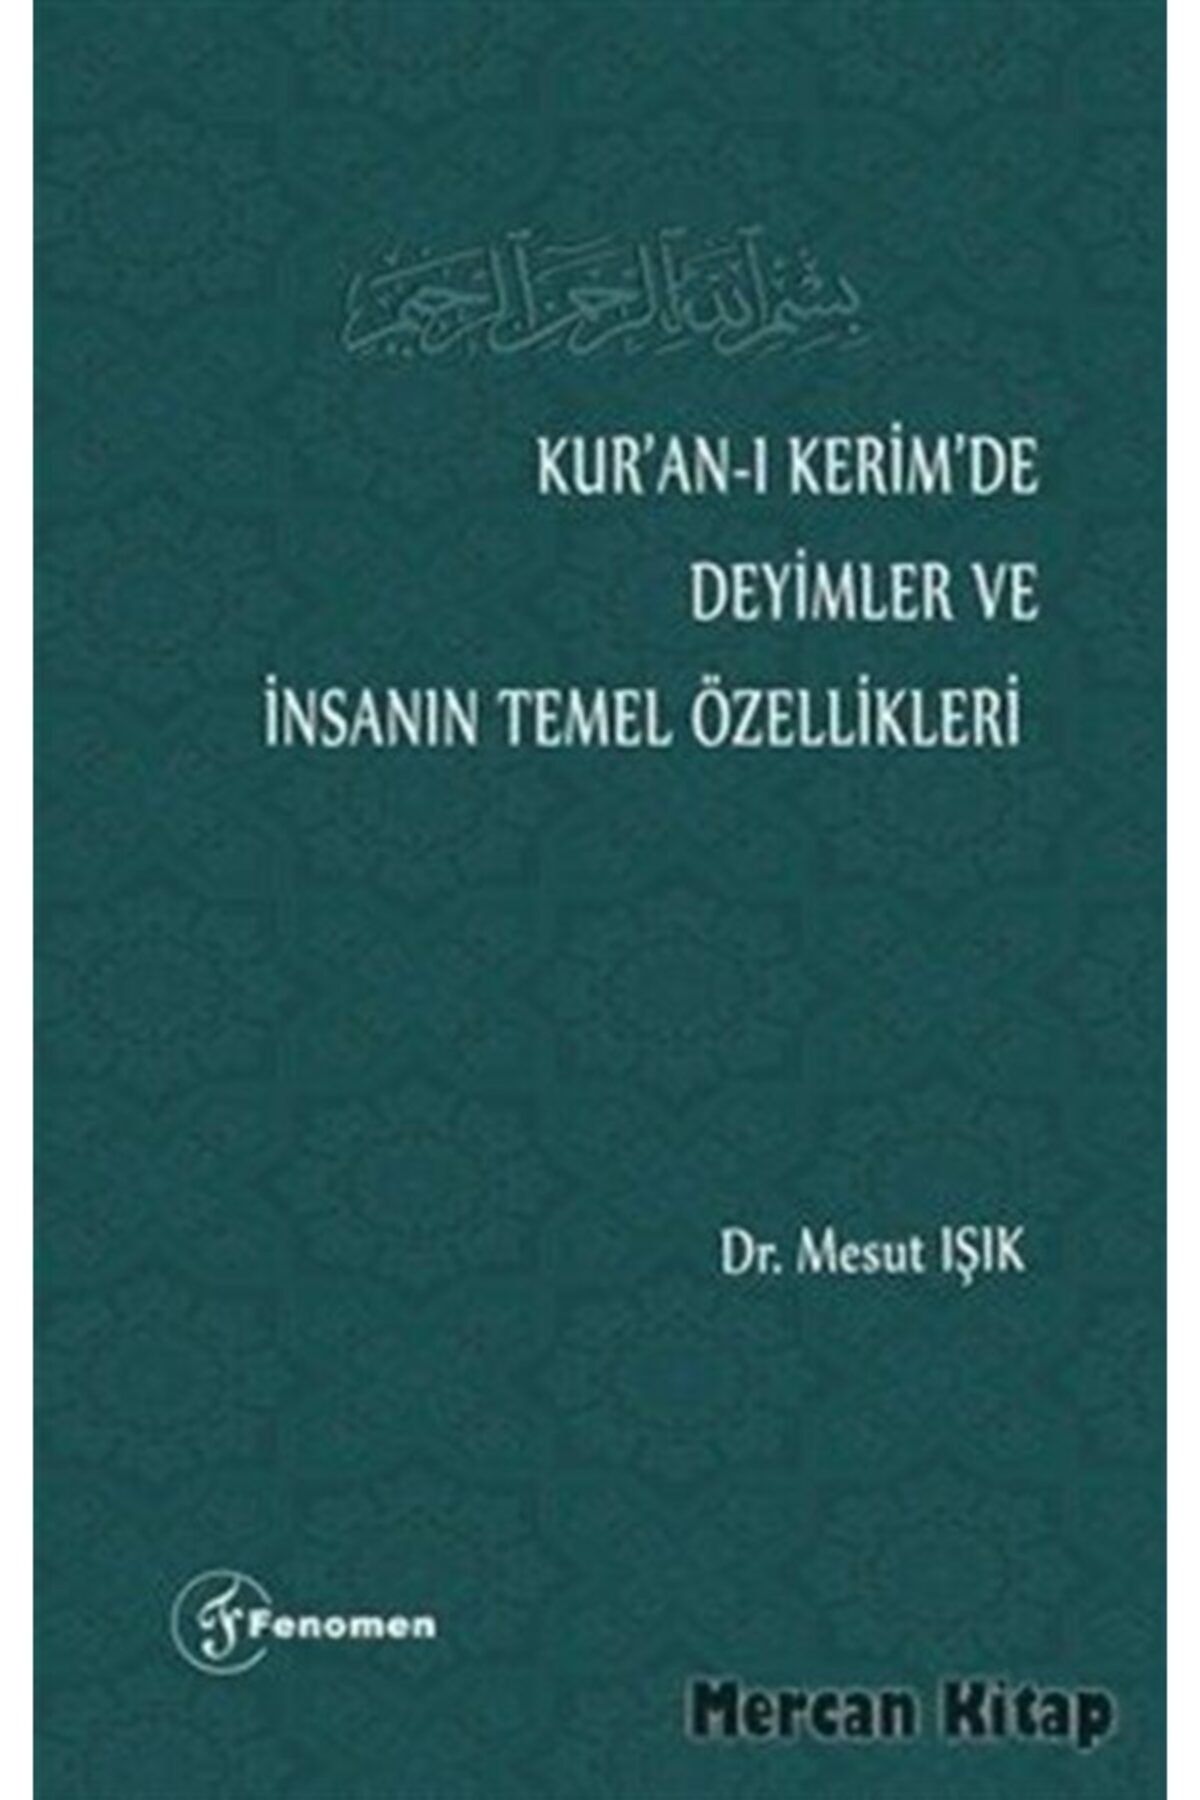 Fenomen Yayıncılık Kur'an-ı Kerim'de Deyimler Ve Insanın Temel Özellikleri